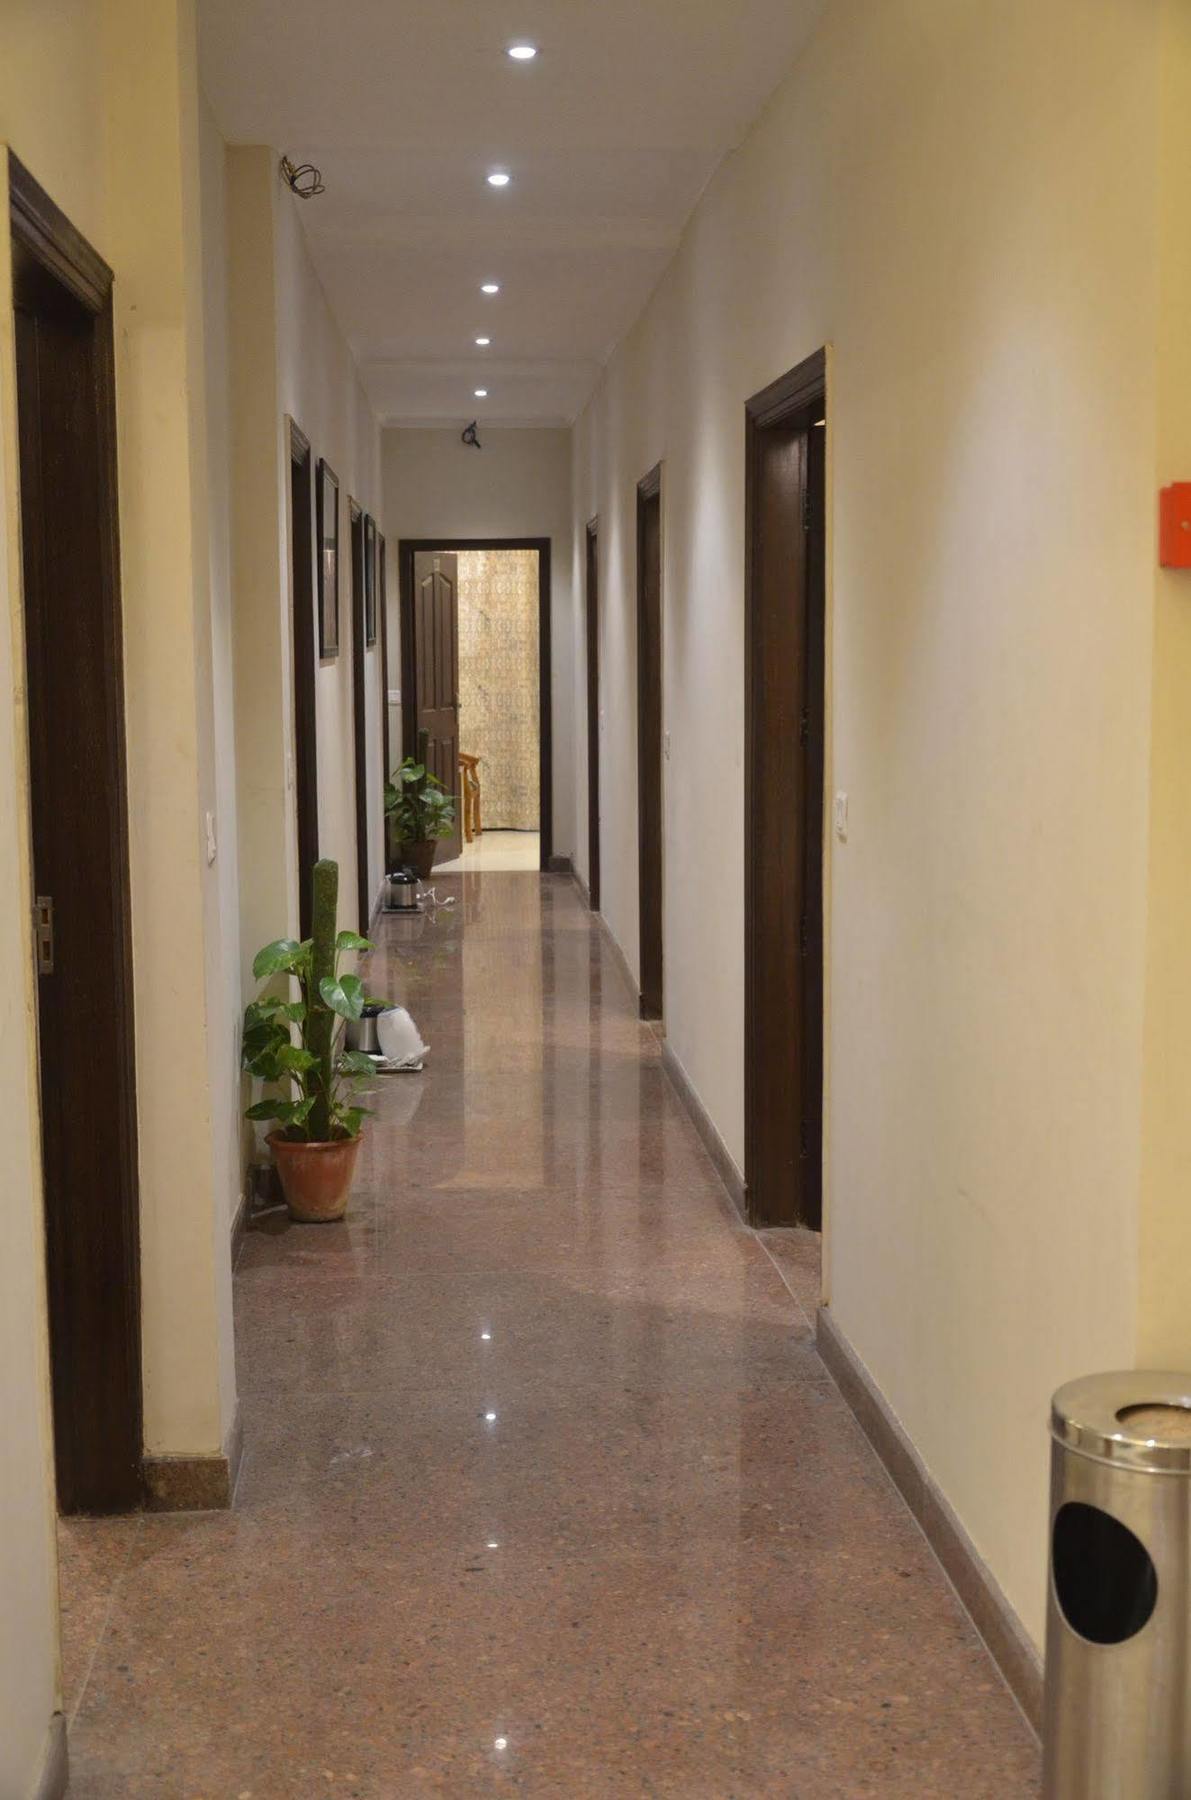 Hotel Pace Gurgaon Extérieur photo